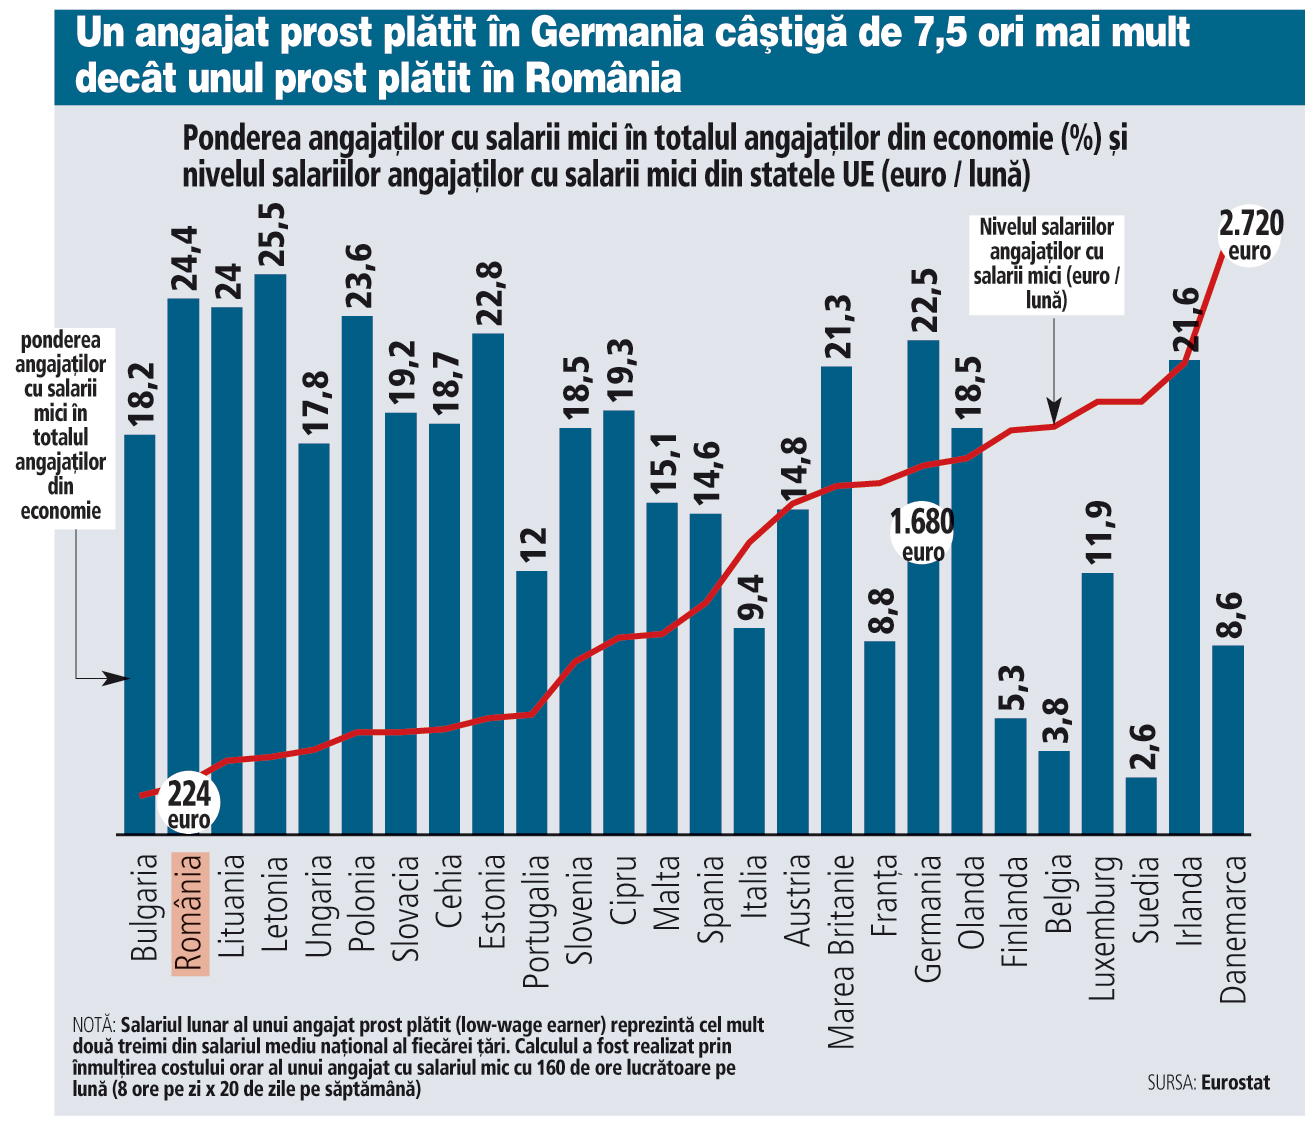 Din nou la coada clasamentului european: România are a doua cea mai mare pondere a angajaţilor prost plătiţi din Uniunea Europeană